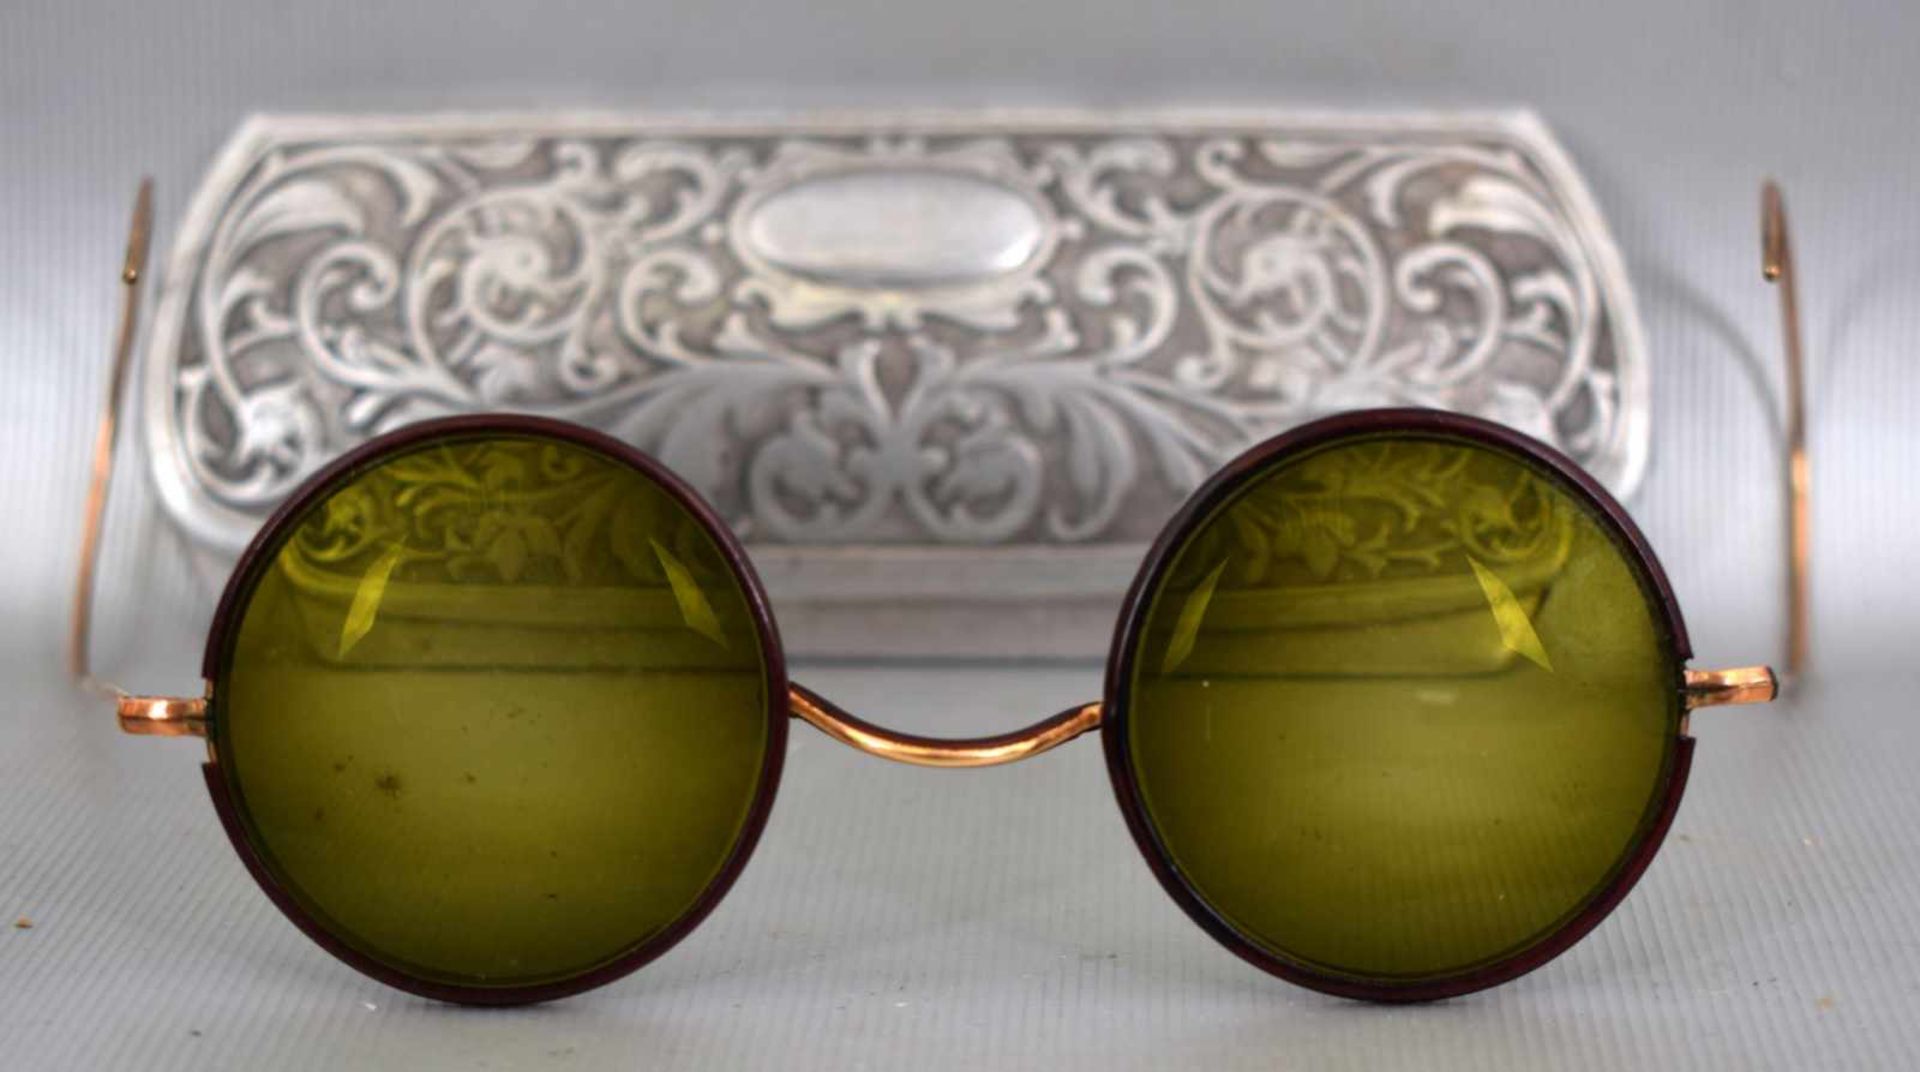 Panzerbrille Metall vergoldet, grün schimmerndes Glas, im alten Etui, um 1920